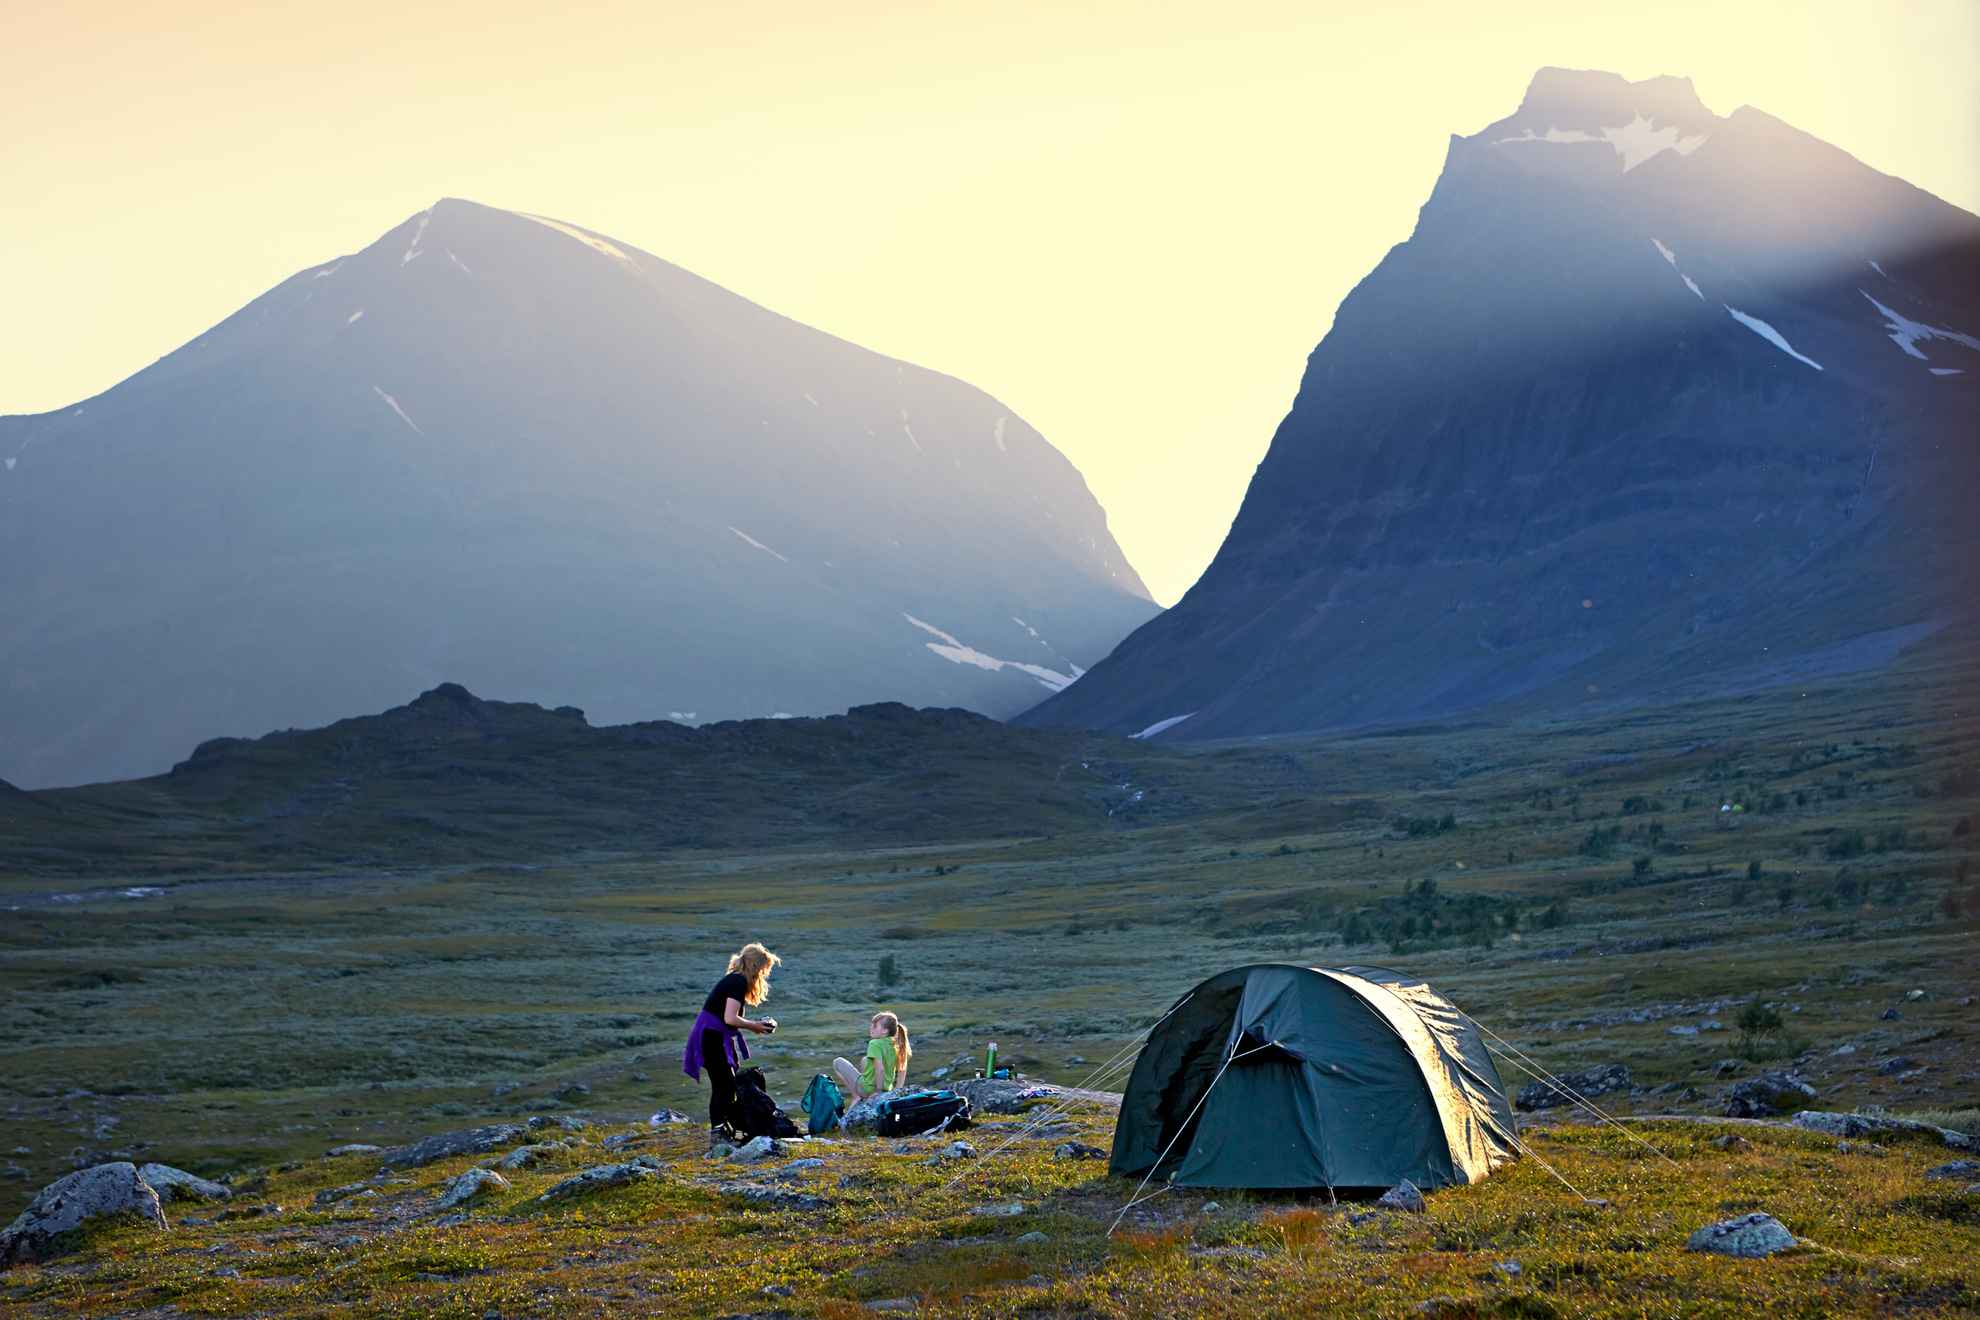 Een tent staat midden in de natuur. Op de achtergrond twee bergen. Twee personen zitten naast de tent.